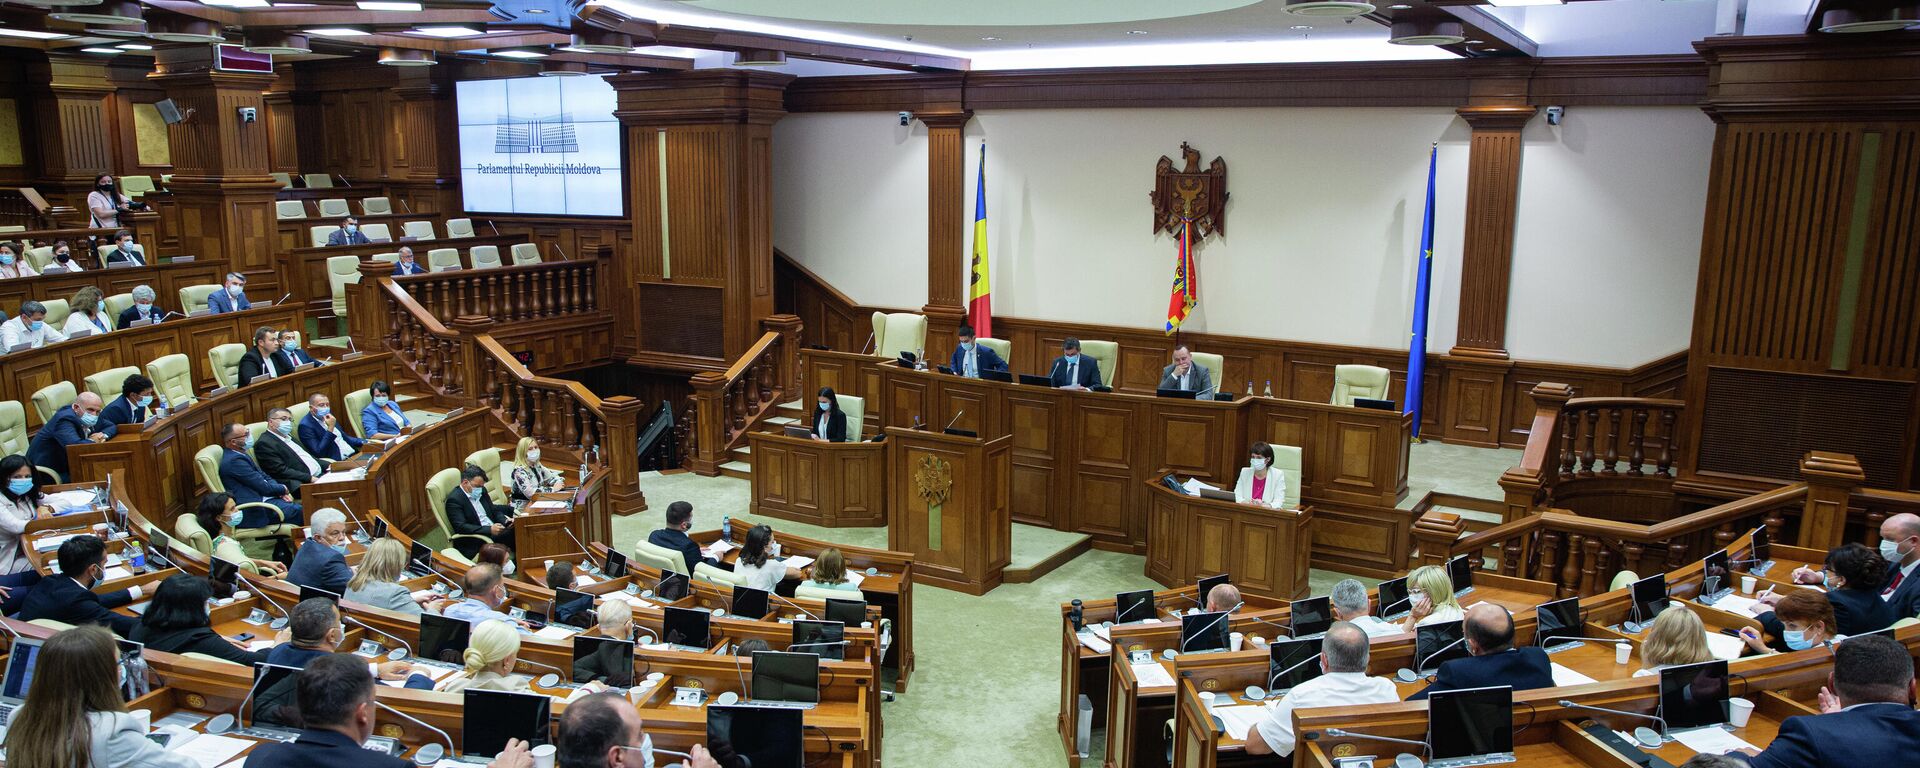 Deputați în Parlamentul Republicii Moldova  - Sputnik Молдова, 1920, 13.08.2021